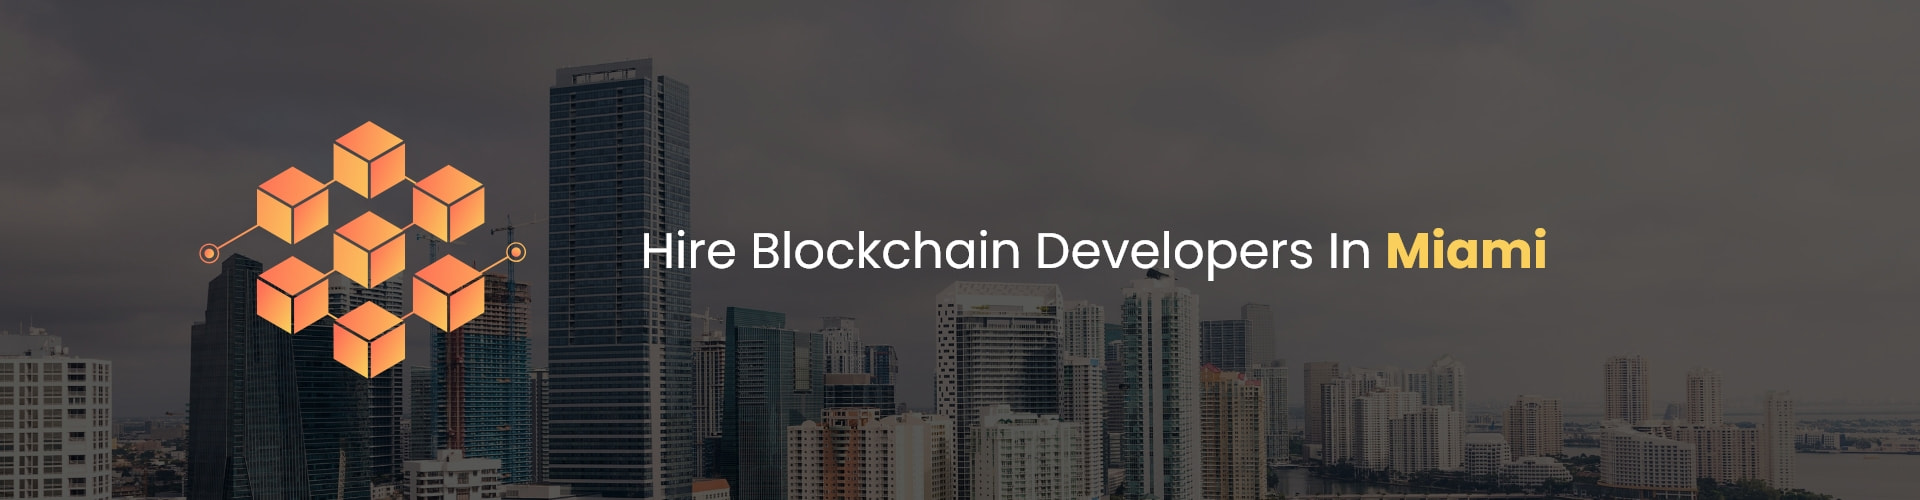 hire blockchain developers in miami